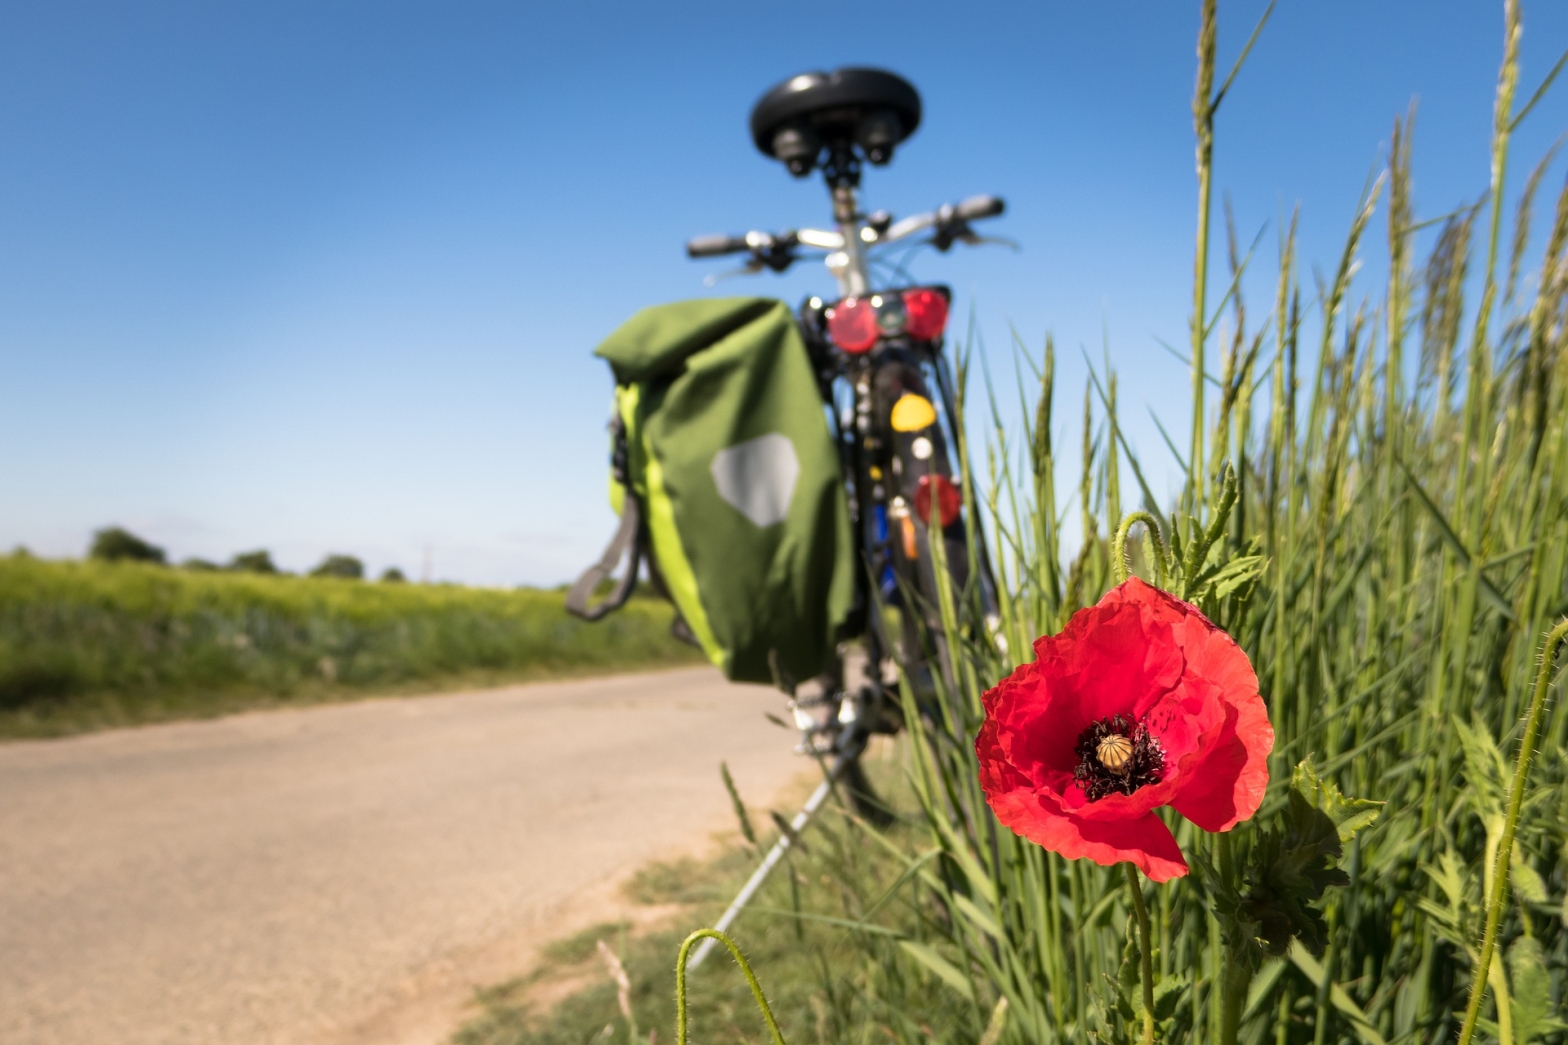 Eine Mohnblume blüht in kräftigem Rot am Wegesrand. Im Hintergrund ist ein Fahrrad mit grüner Gepäcktasche abgestellt, der Himmel ist strahlend blau und die Pflanzen am Wegesrand in einem kräftigem Grün.